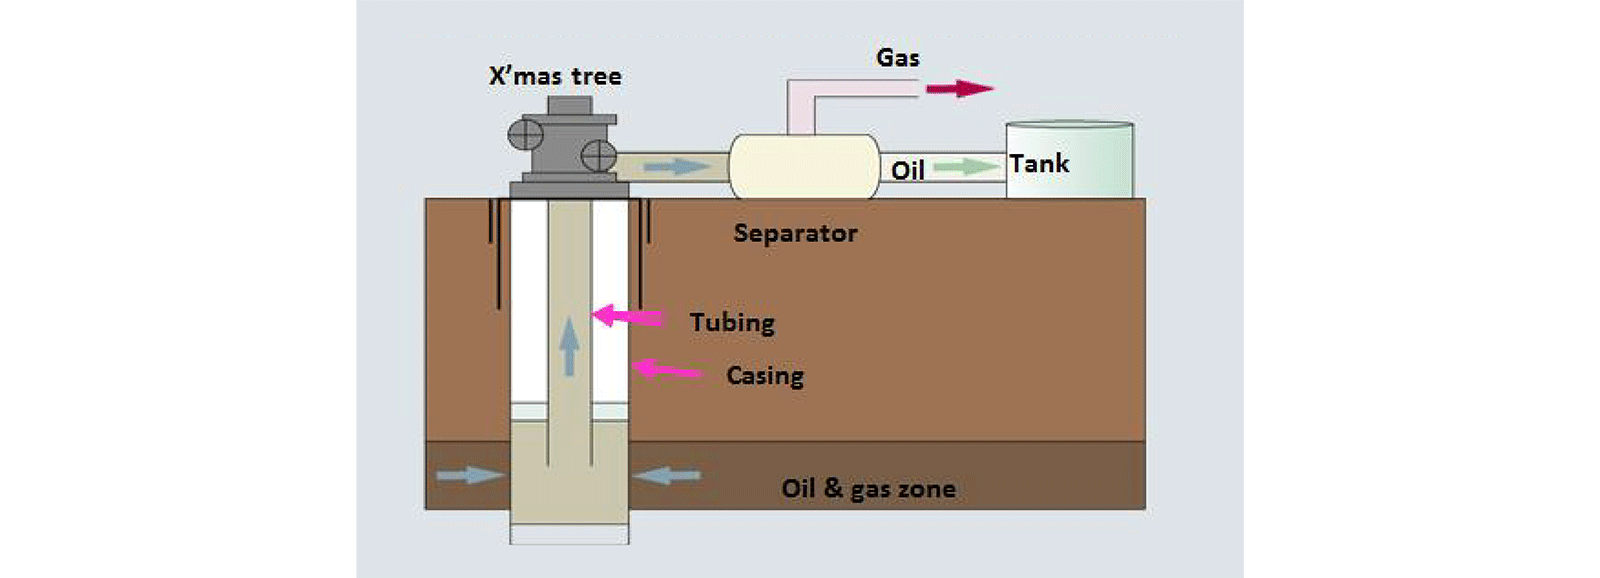 Pozos convencionales de extracción de gas natural